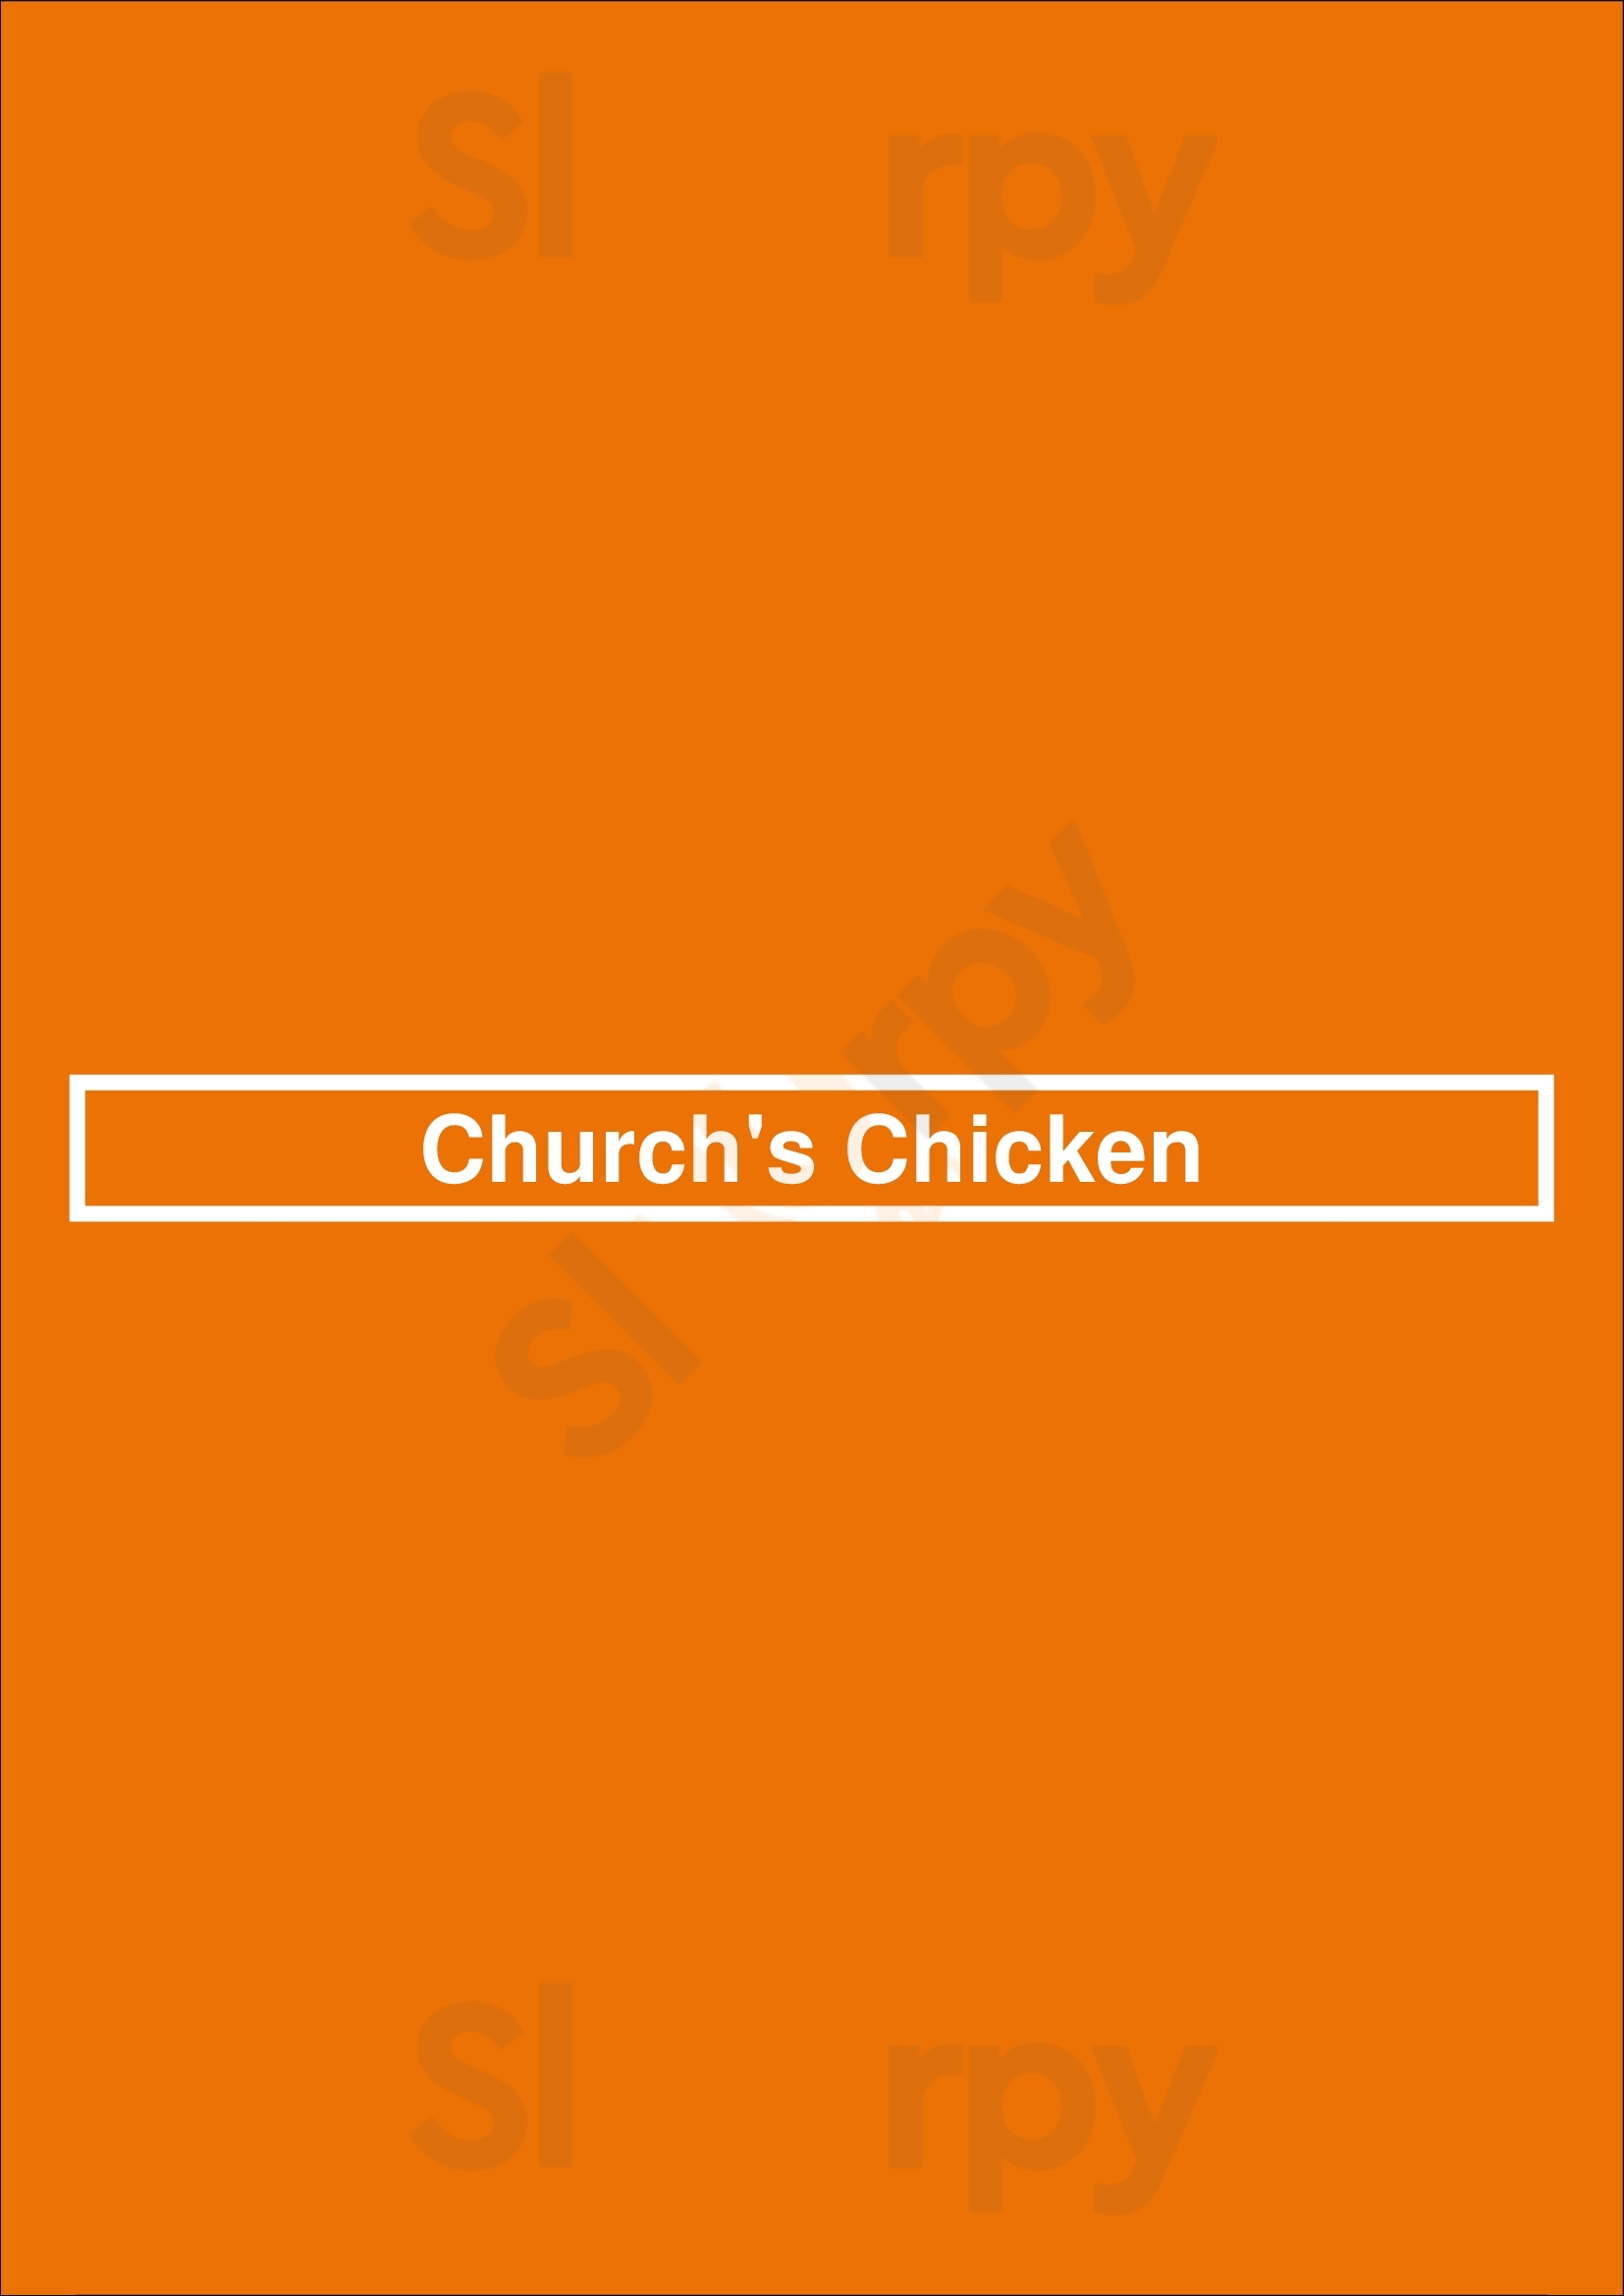 Church's Texas Chicken Saint Louis Menu - 1